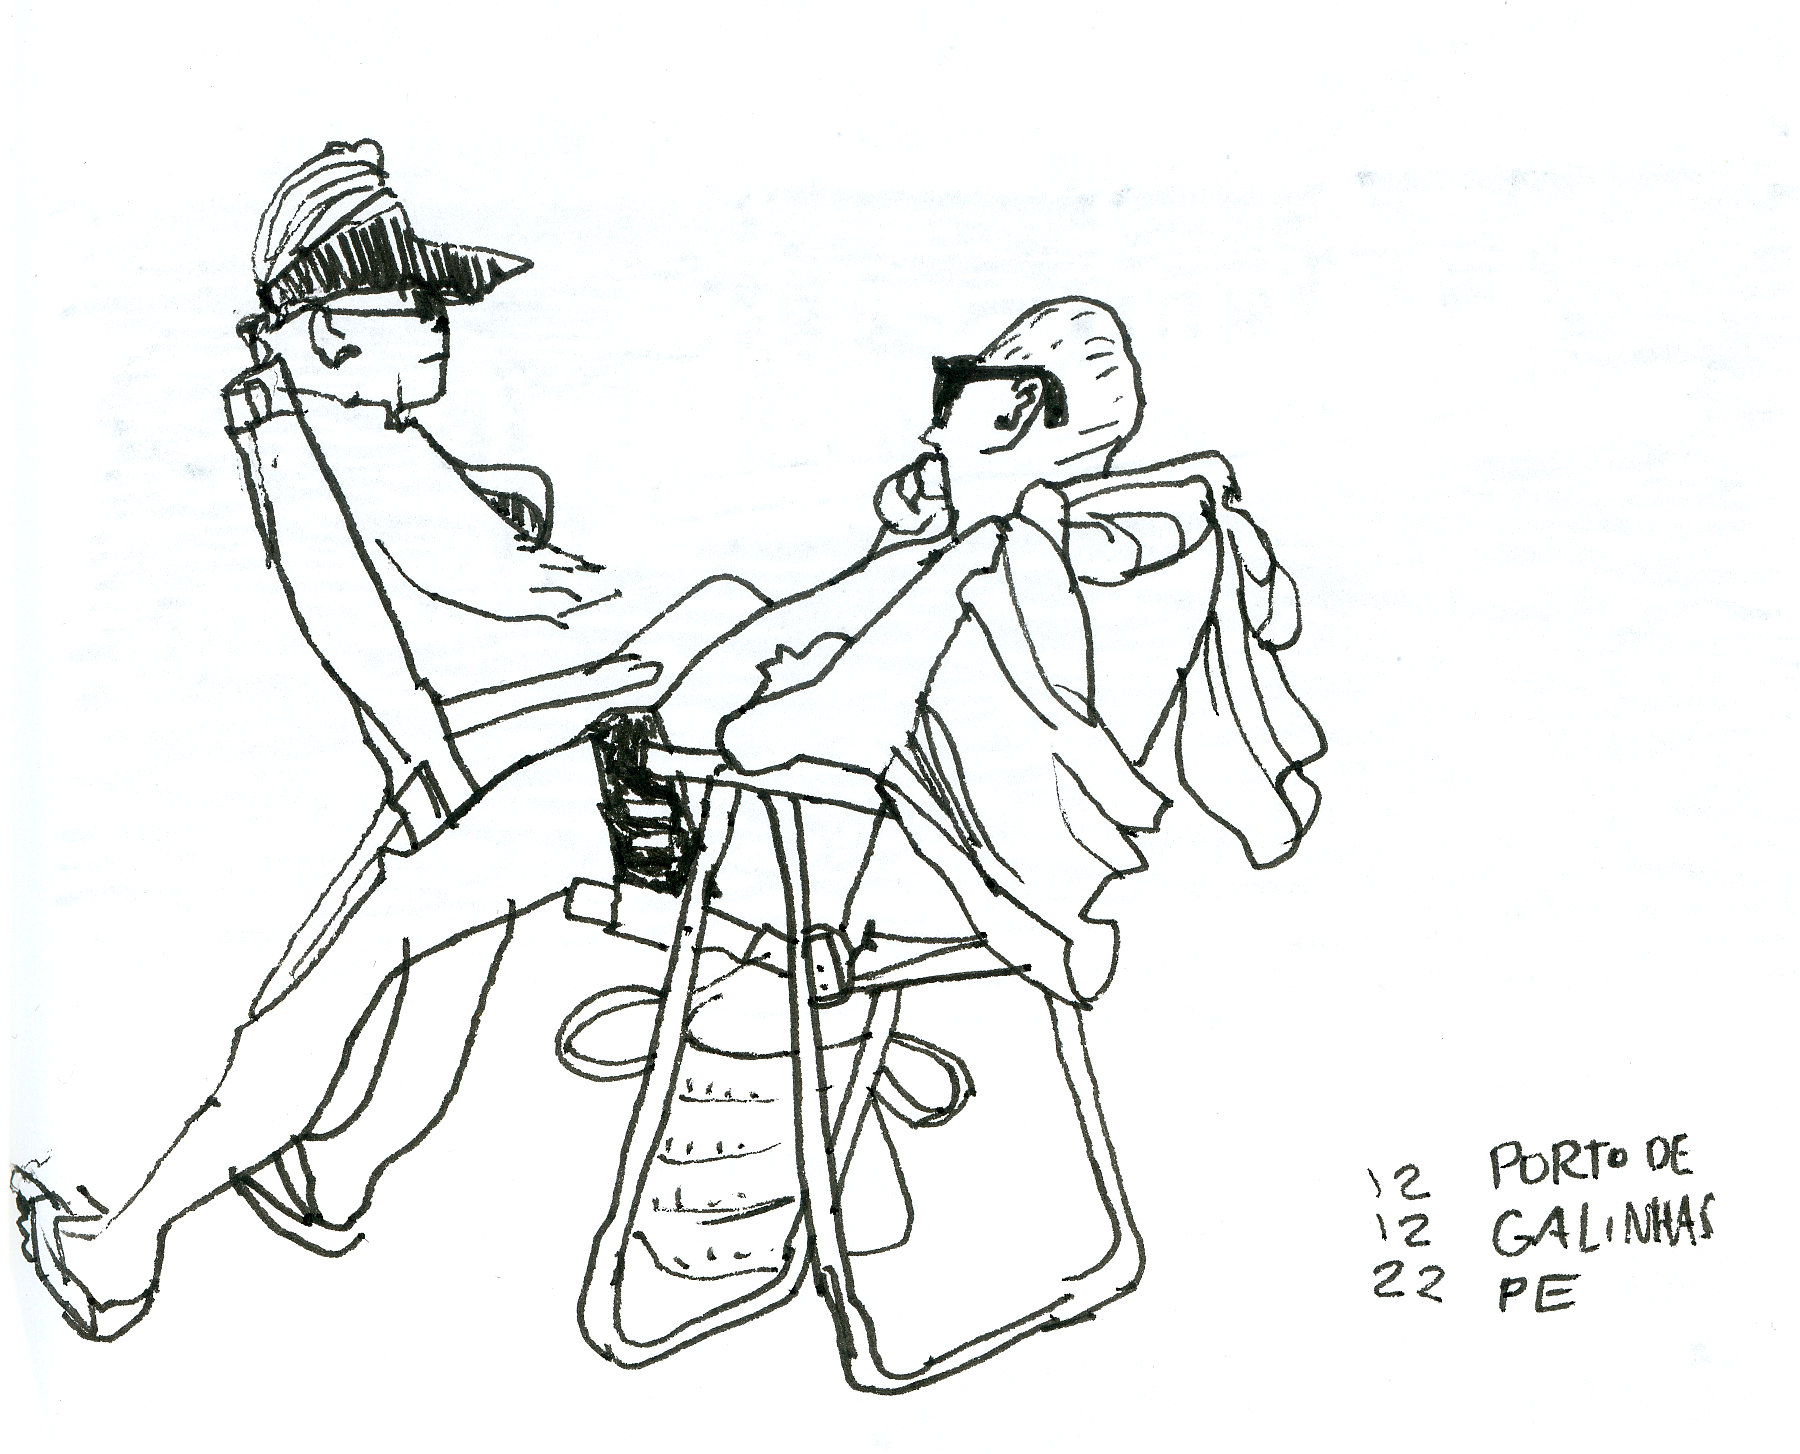 Desenho de um casal em cadeiras de praia. Roupa pendurada no encosto sugere vento